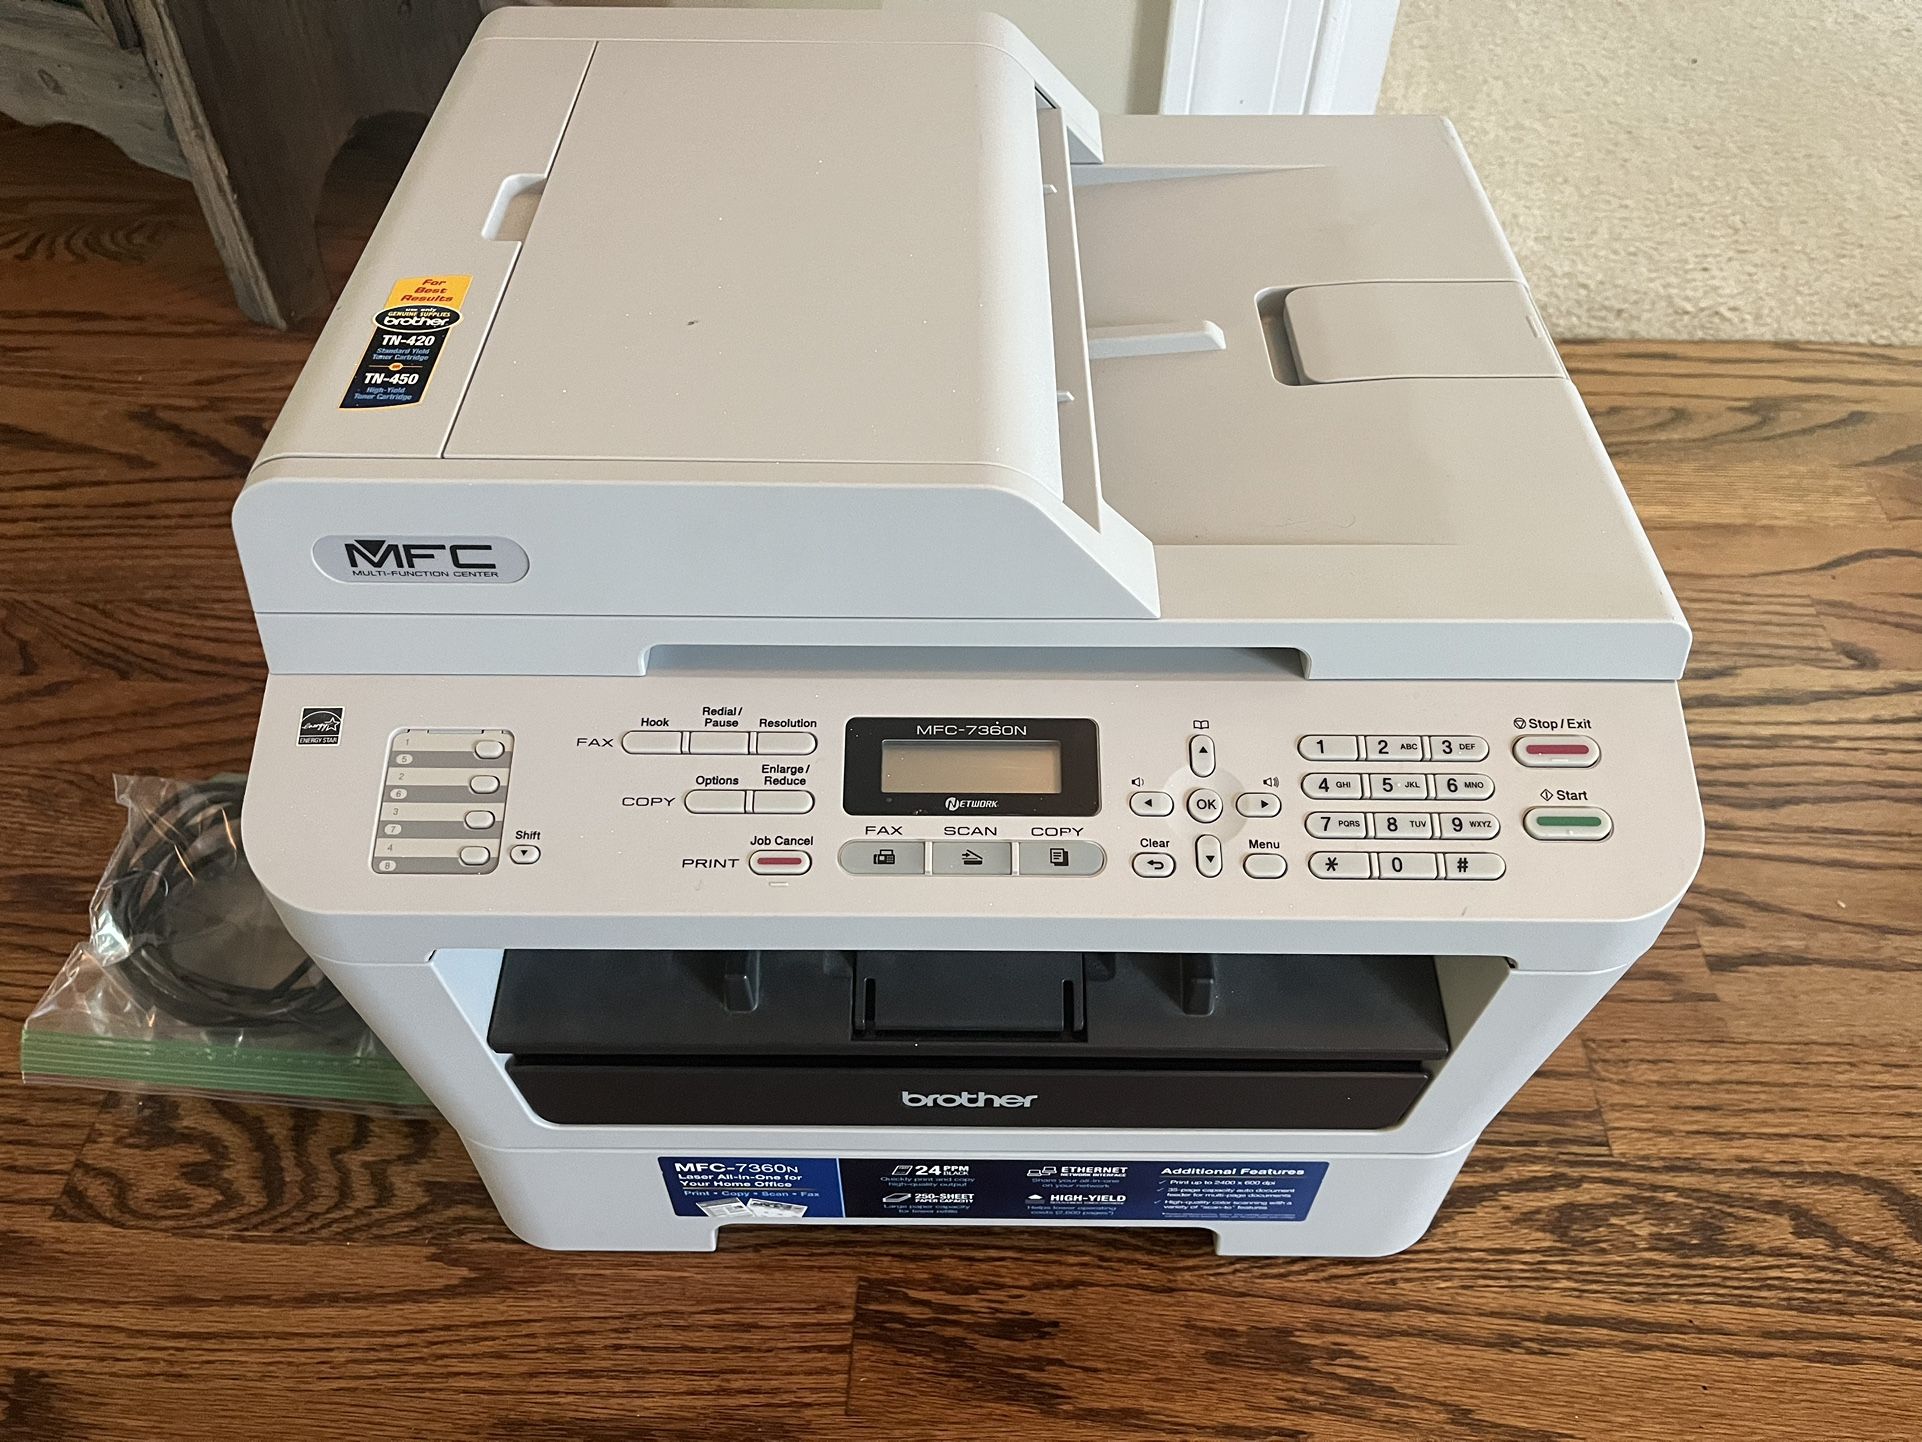 Brother MFC-7360N Laser Printer Scanner Copier